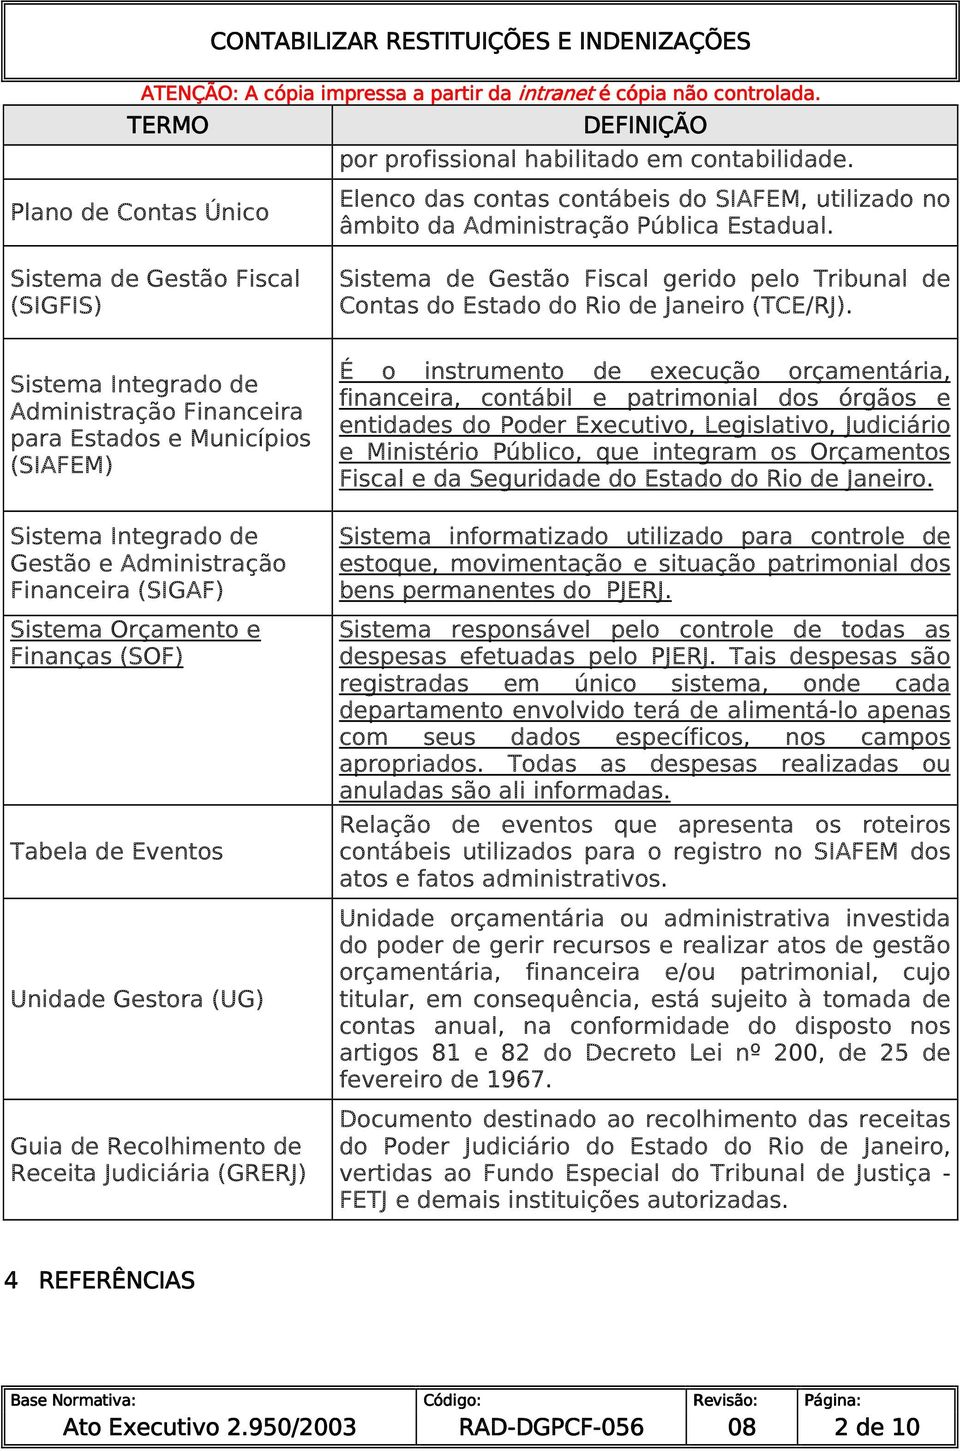 Finanças (SOF) Tabela de Eventos Unidade Gestora (UG) Guia de Recolhimento de Receita Judiciária (GRERJ) Sistema de Gestão Fiscal gerido pelo Tribunal de Contas do Estado do Rio de Janeiro (TCE/RJ).